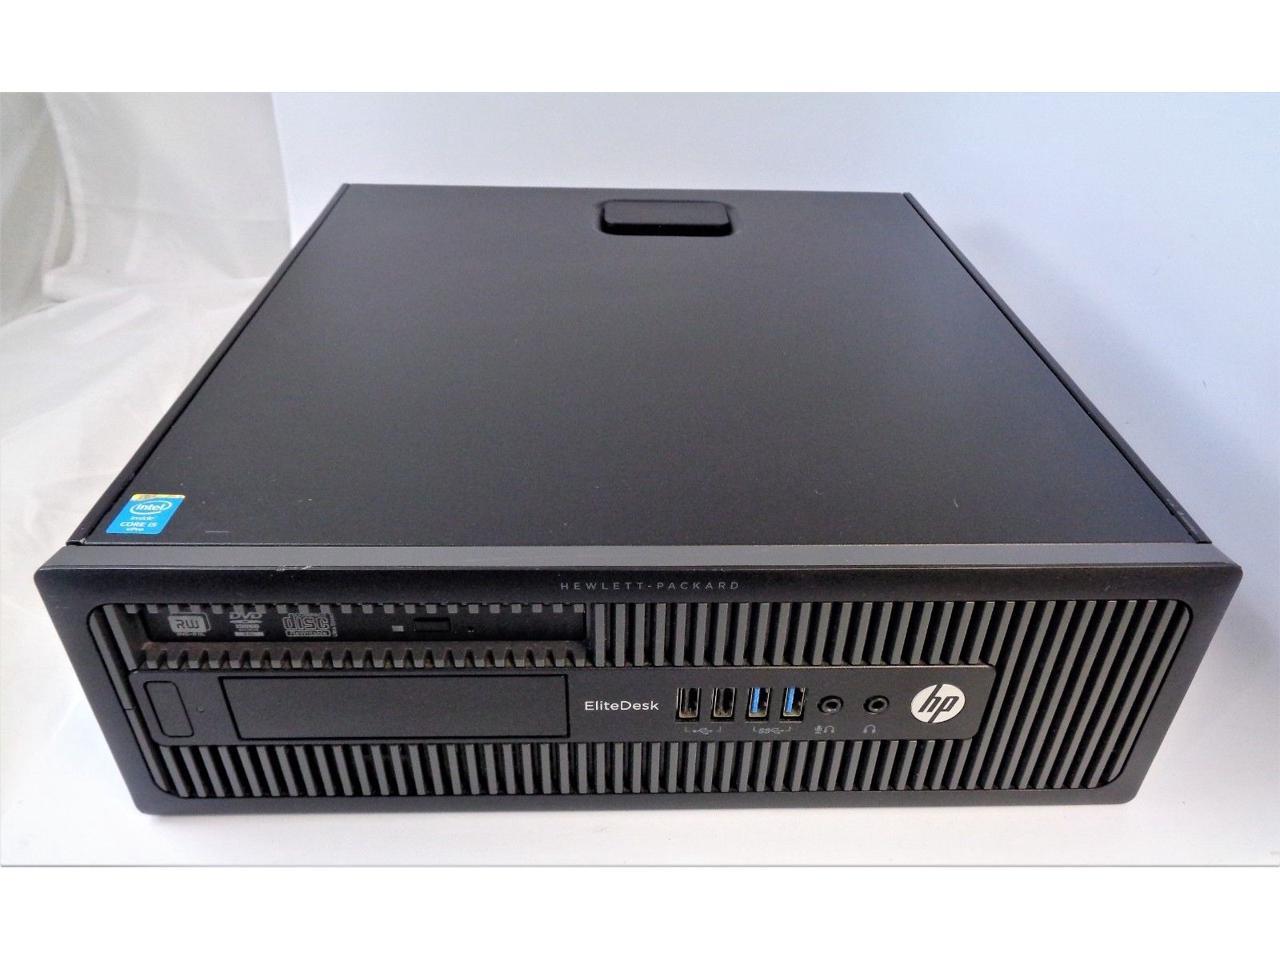 HP Elitedesk 800 G1 SFF i5-4570 3.2GHz 8GB RAM 500GB HDD Windows 10 Home